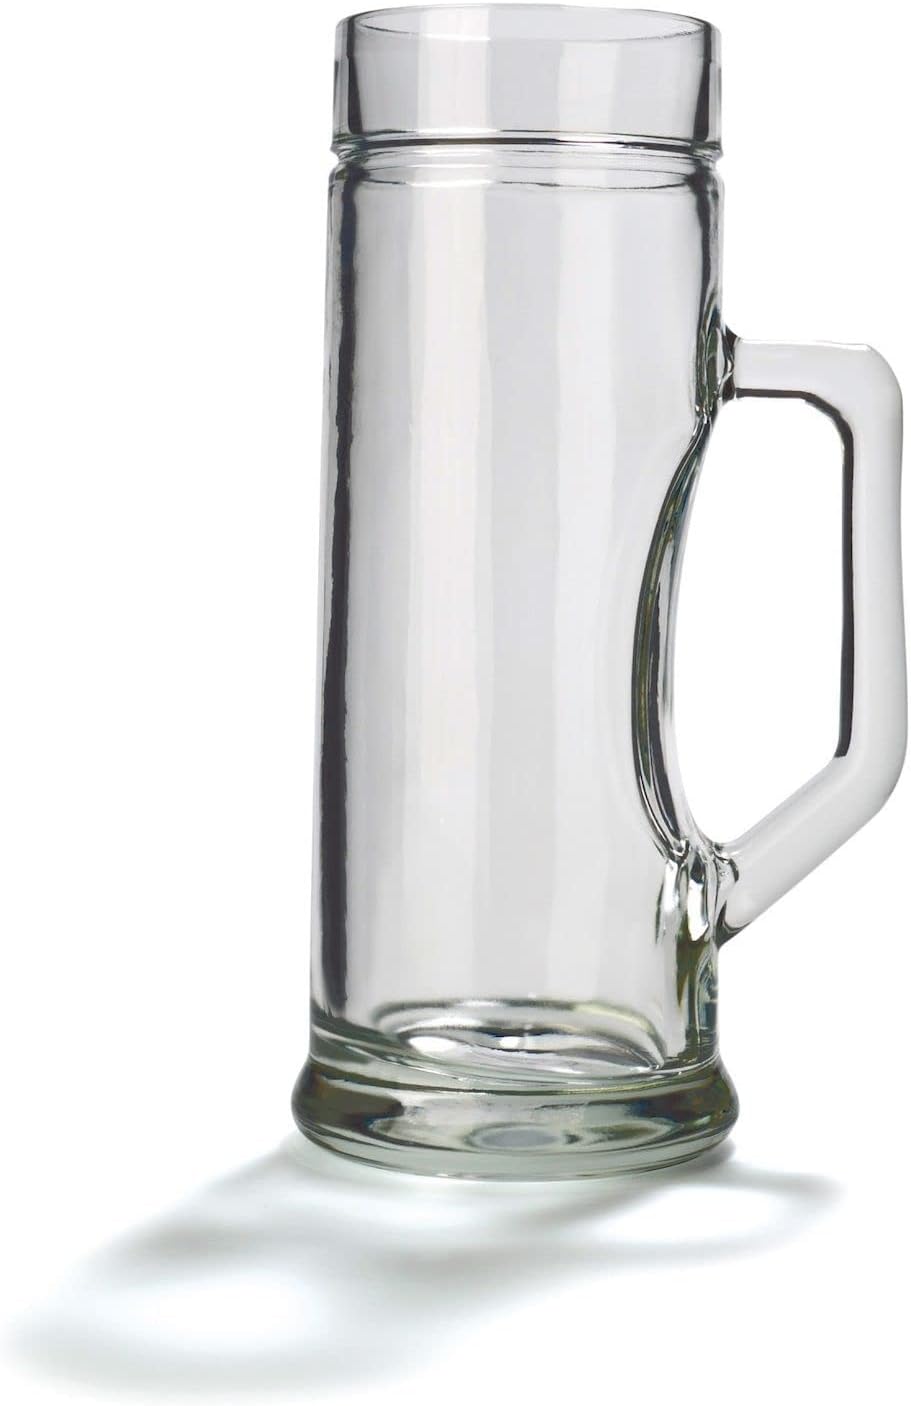 Stölzle Top Glass Beer Mugs Premium Smooth / Set of 6 Beer Mugs 0.3 Lites / Stable Beer Jug / Beer Glasses 0.3 Lites Made of Soda Lime Glass / Beer Mug 0.3 L Dishwasher Safe